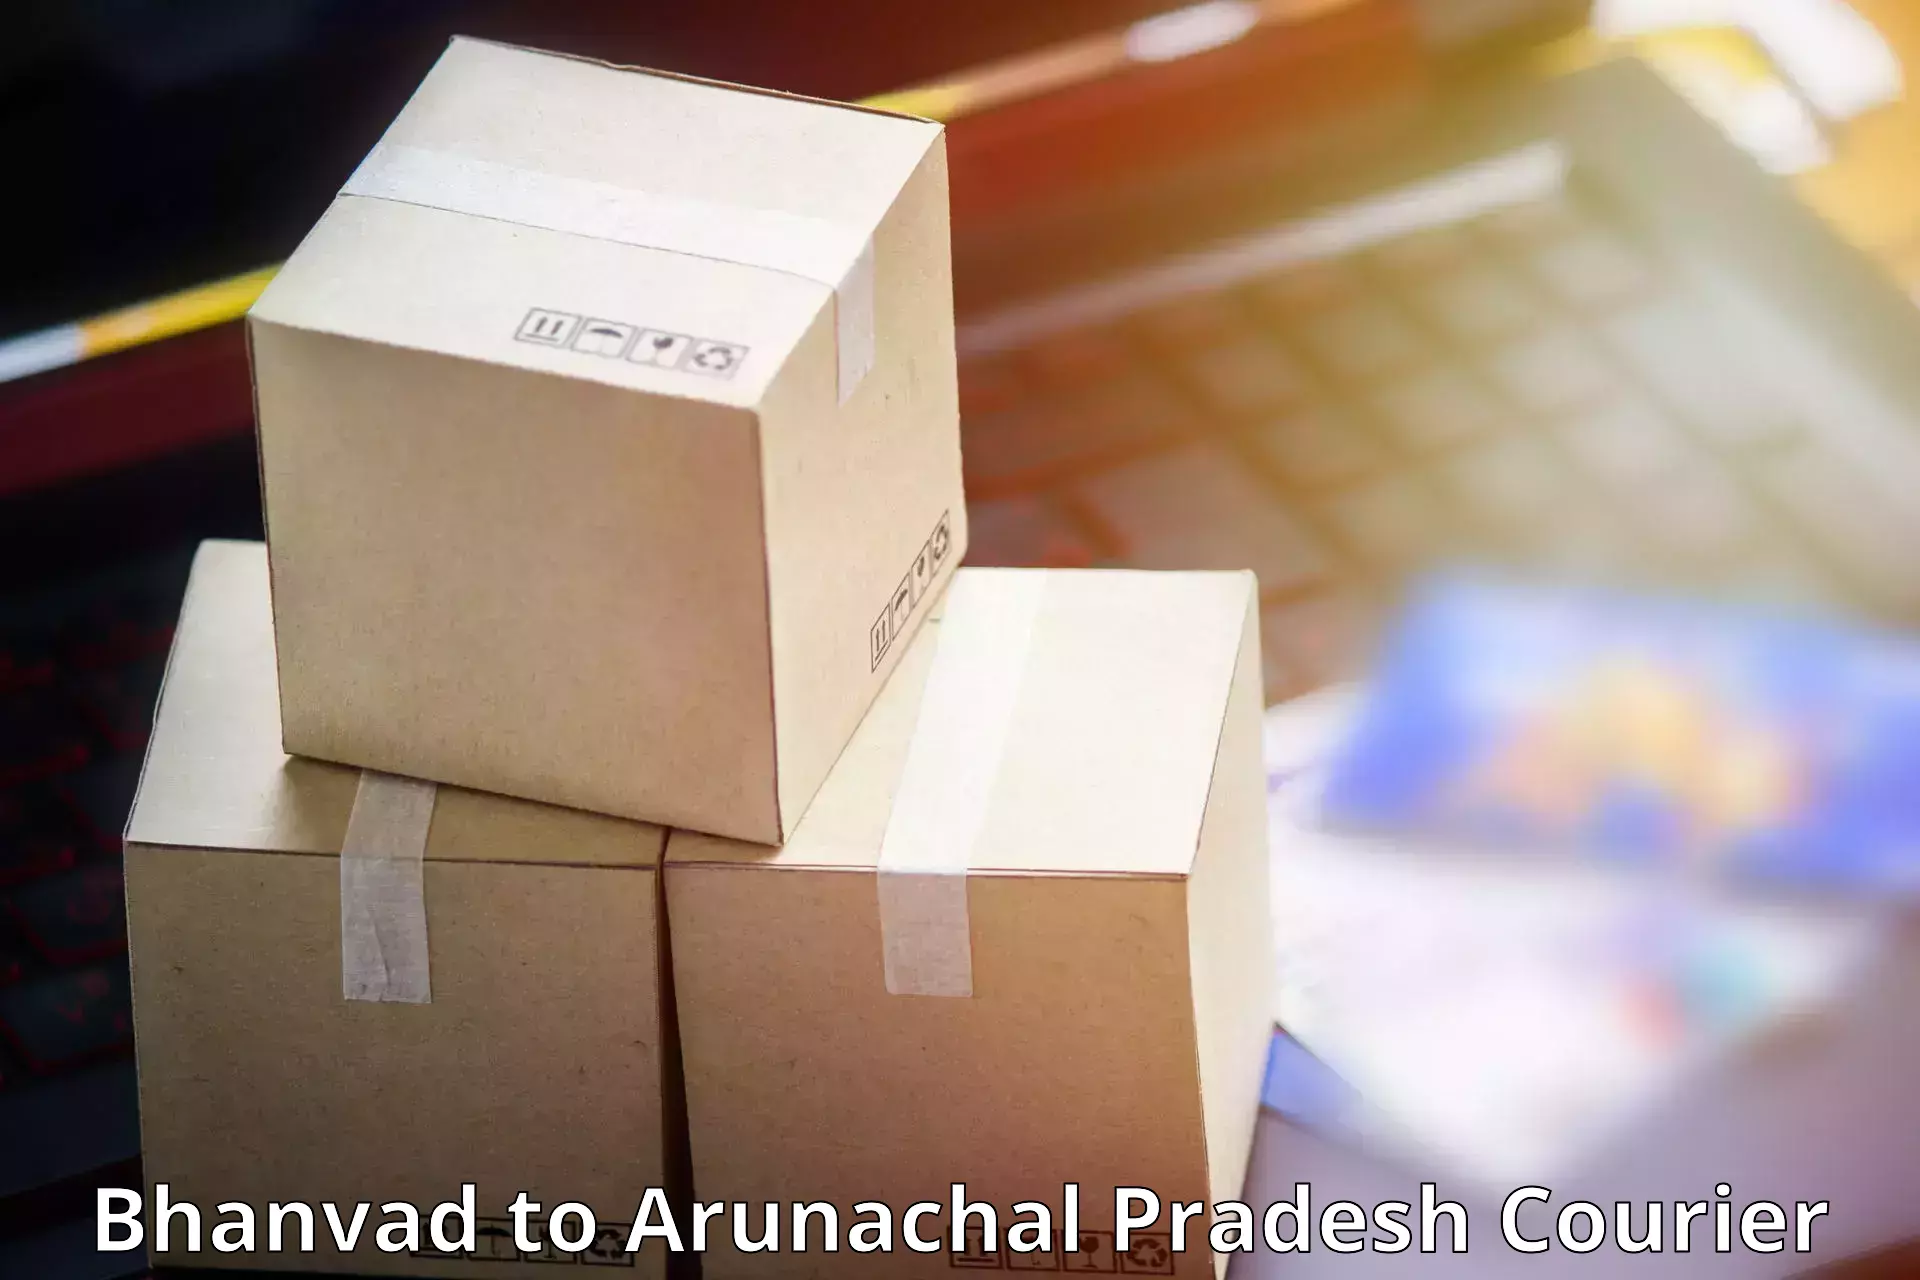 Flexible delivery scheduling Bhanvad to Arunachal Pradesh